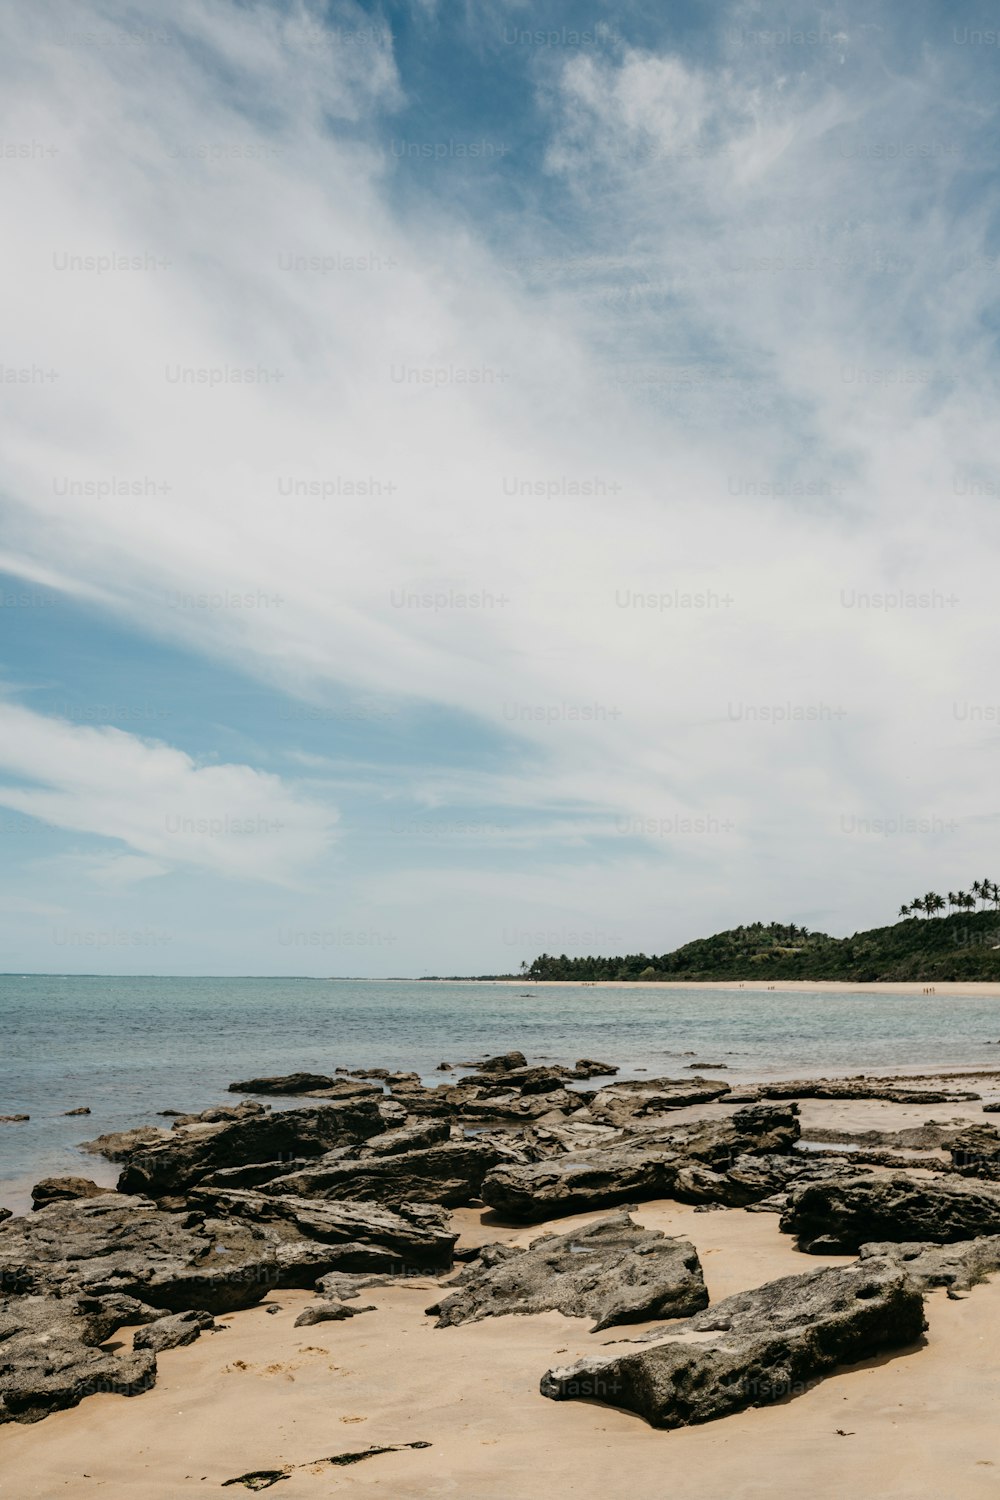 Una playa de arena con rocas y agua bajo un cielo azul nublado